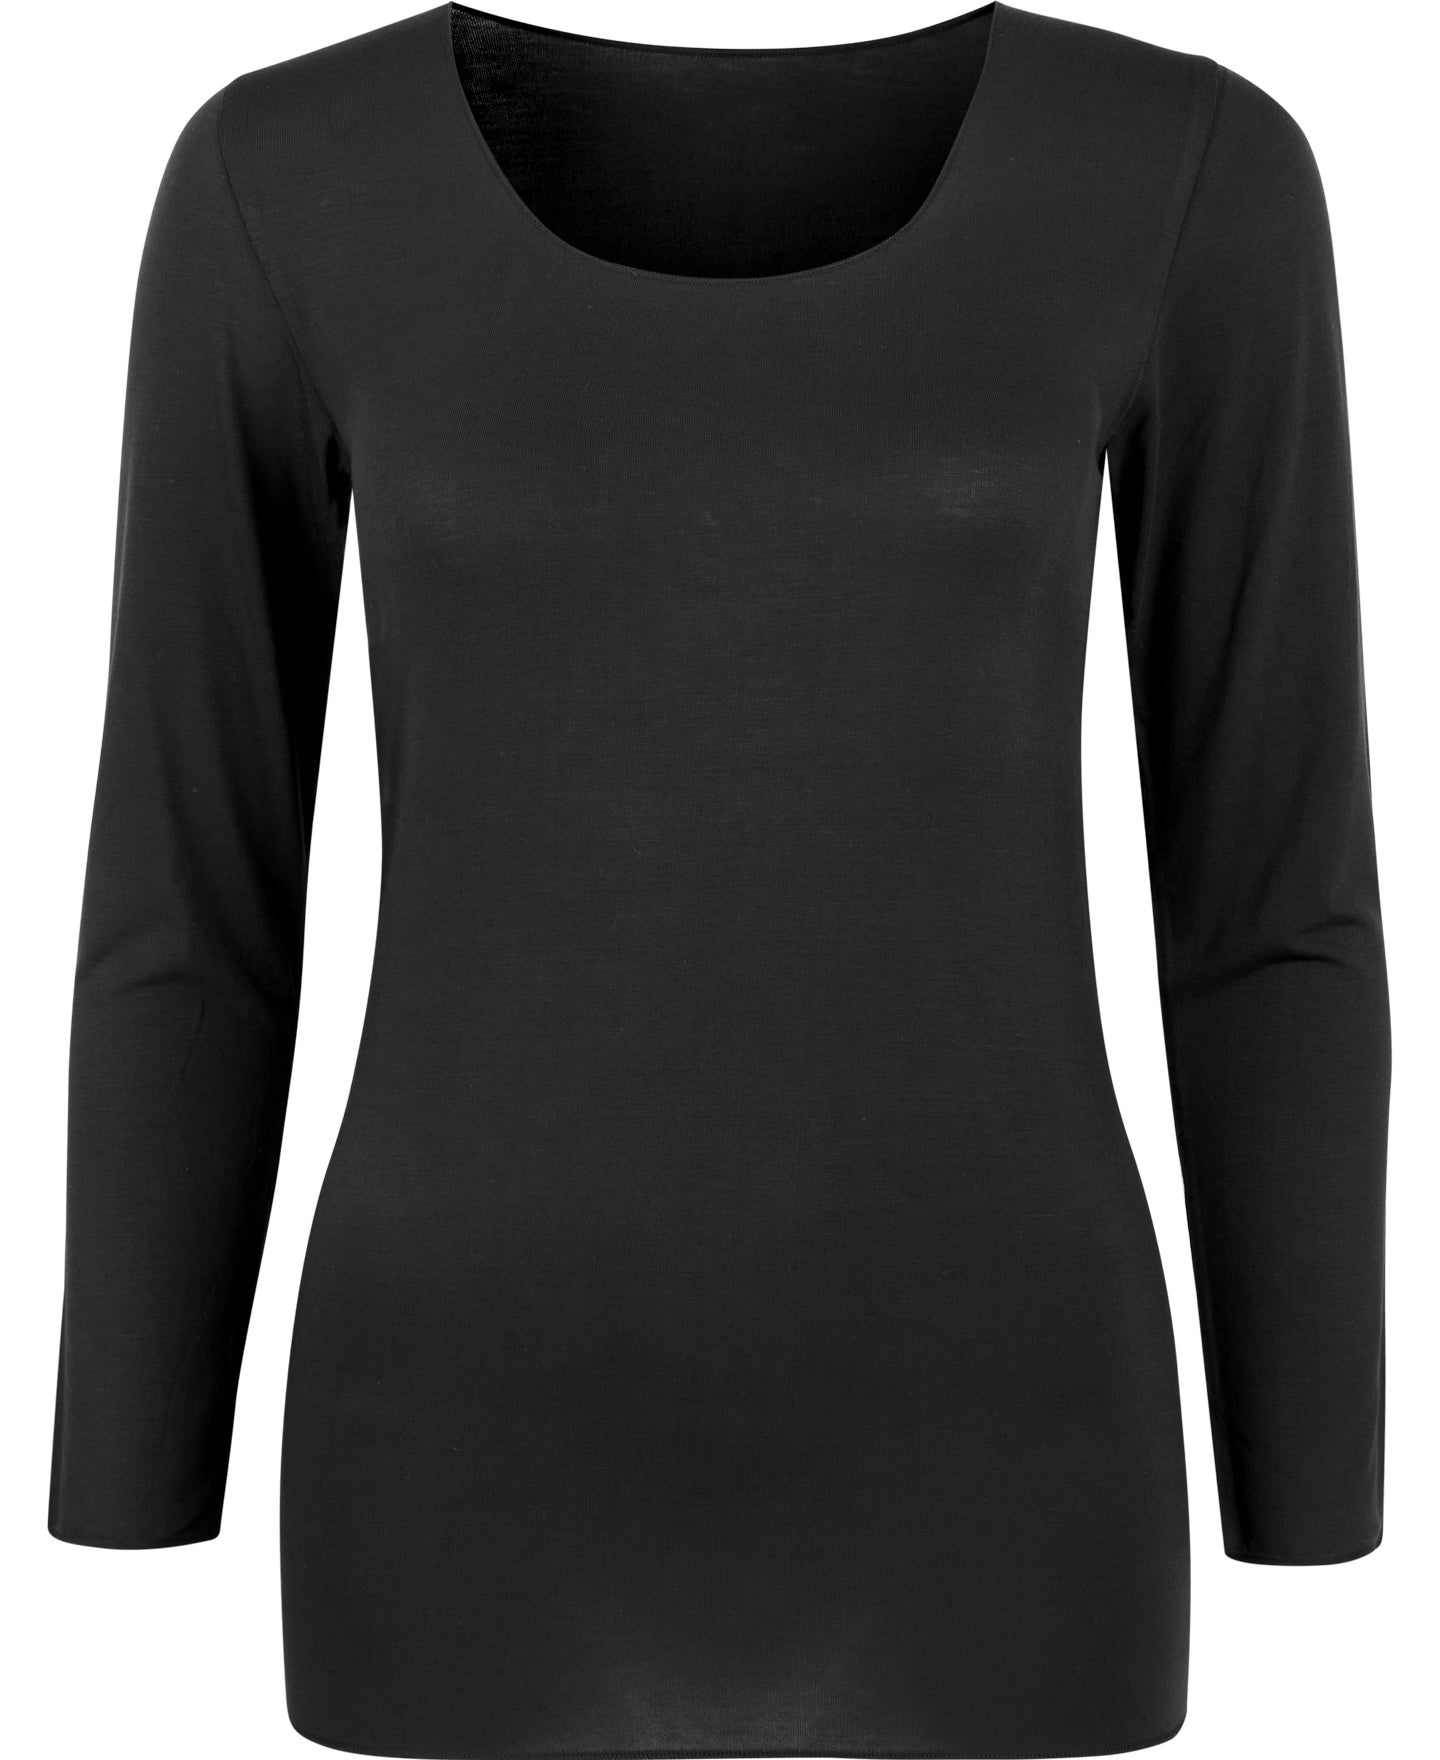 Black Thermal Long Sleeve Top, Women